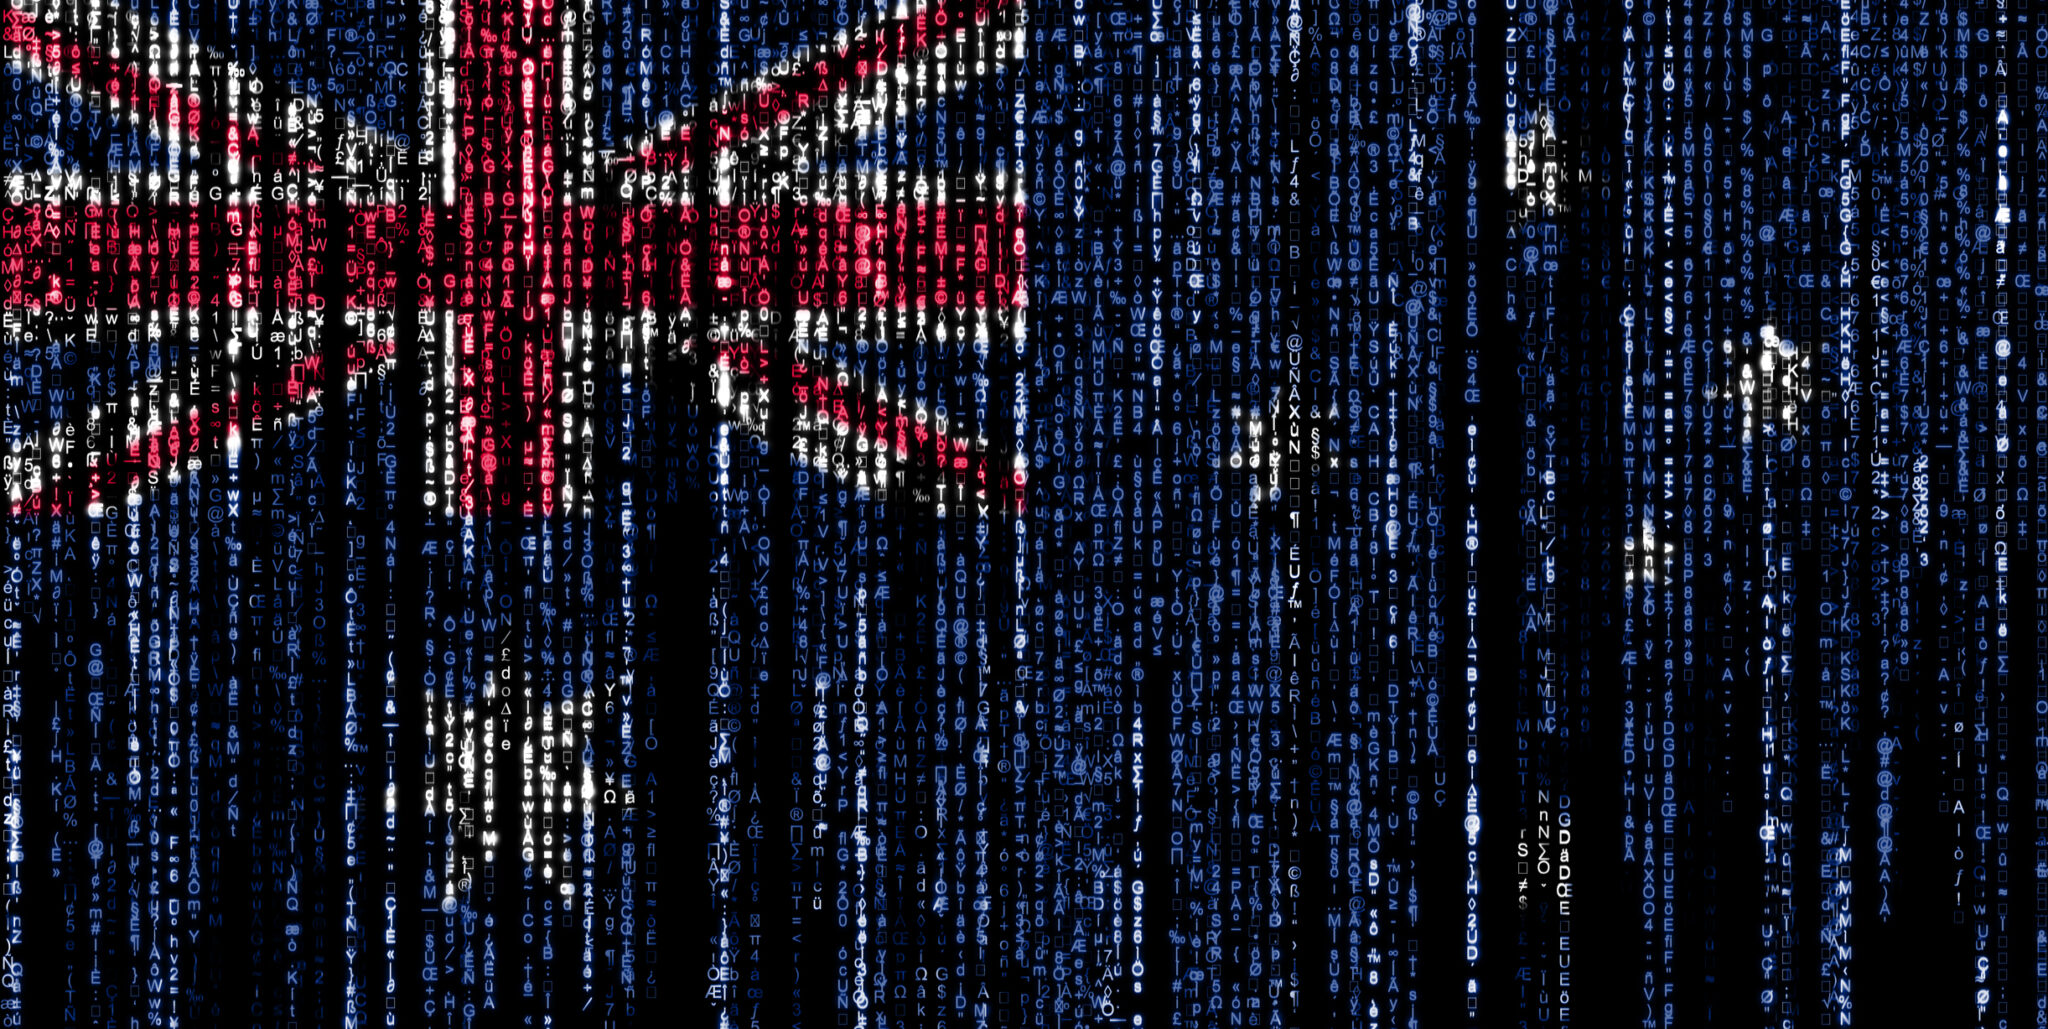 Australia Under Cyber Siege